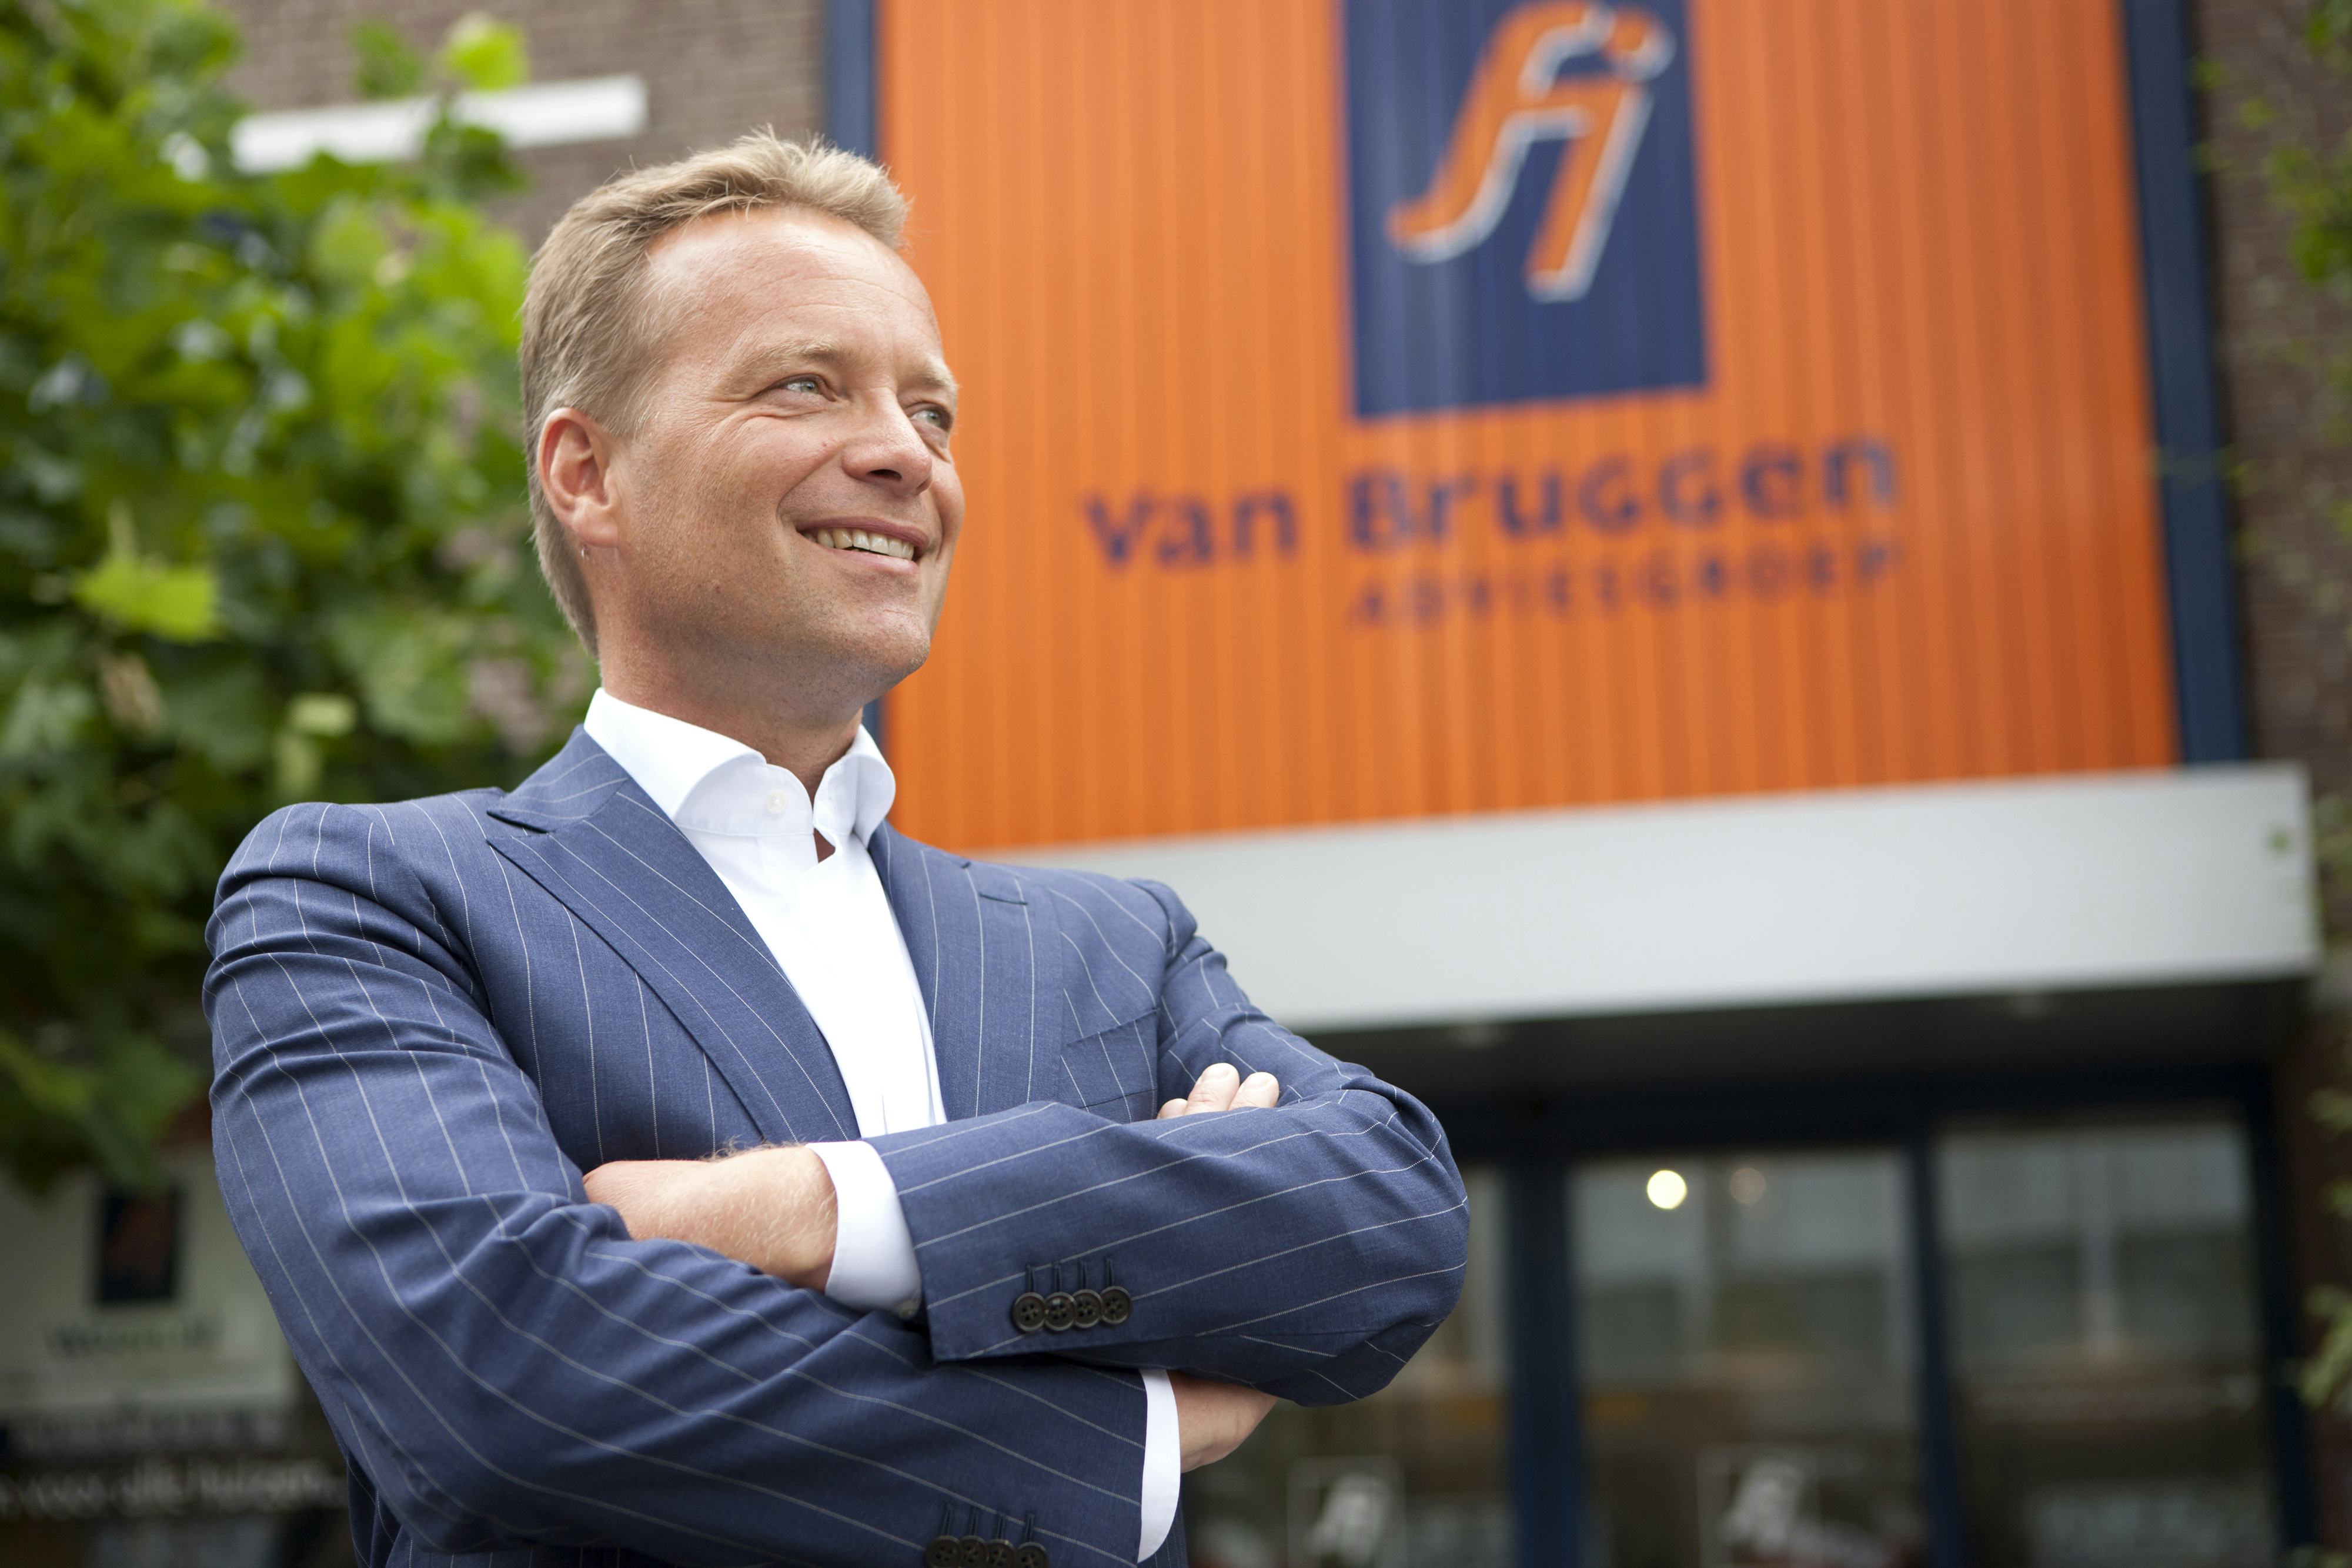 Directeur Pieter van Tuinen nu ook volledig eigenaar Van Bruggen Adviesgroep